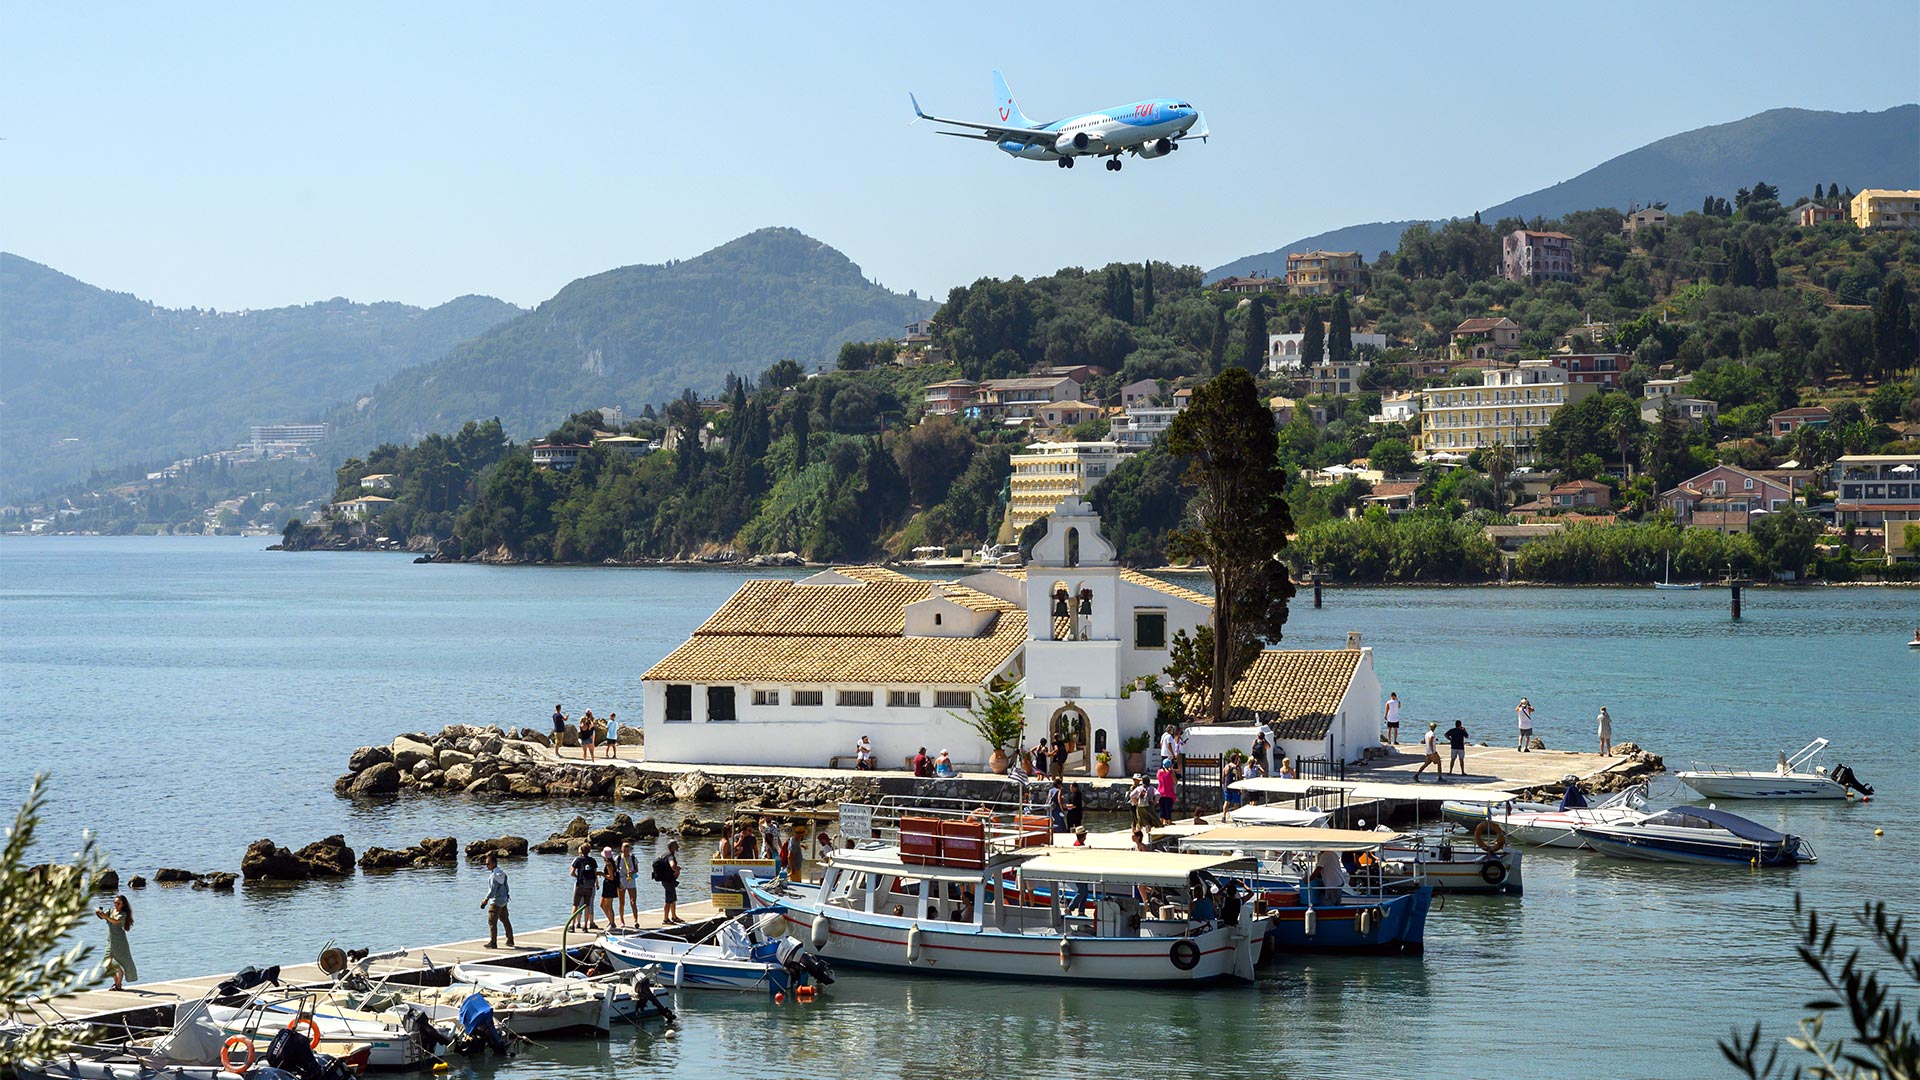 Ein Tui-Flugzeug im Landeanflug auf den Flughafen der Insel Korfu, Griechenland